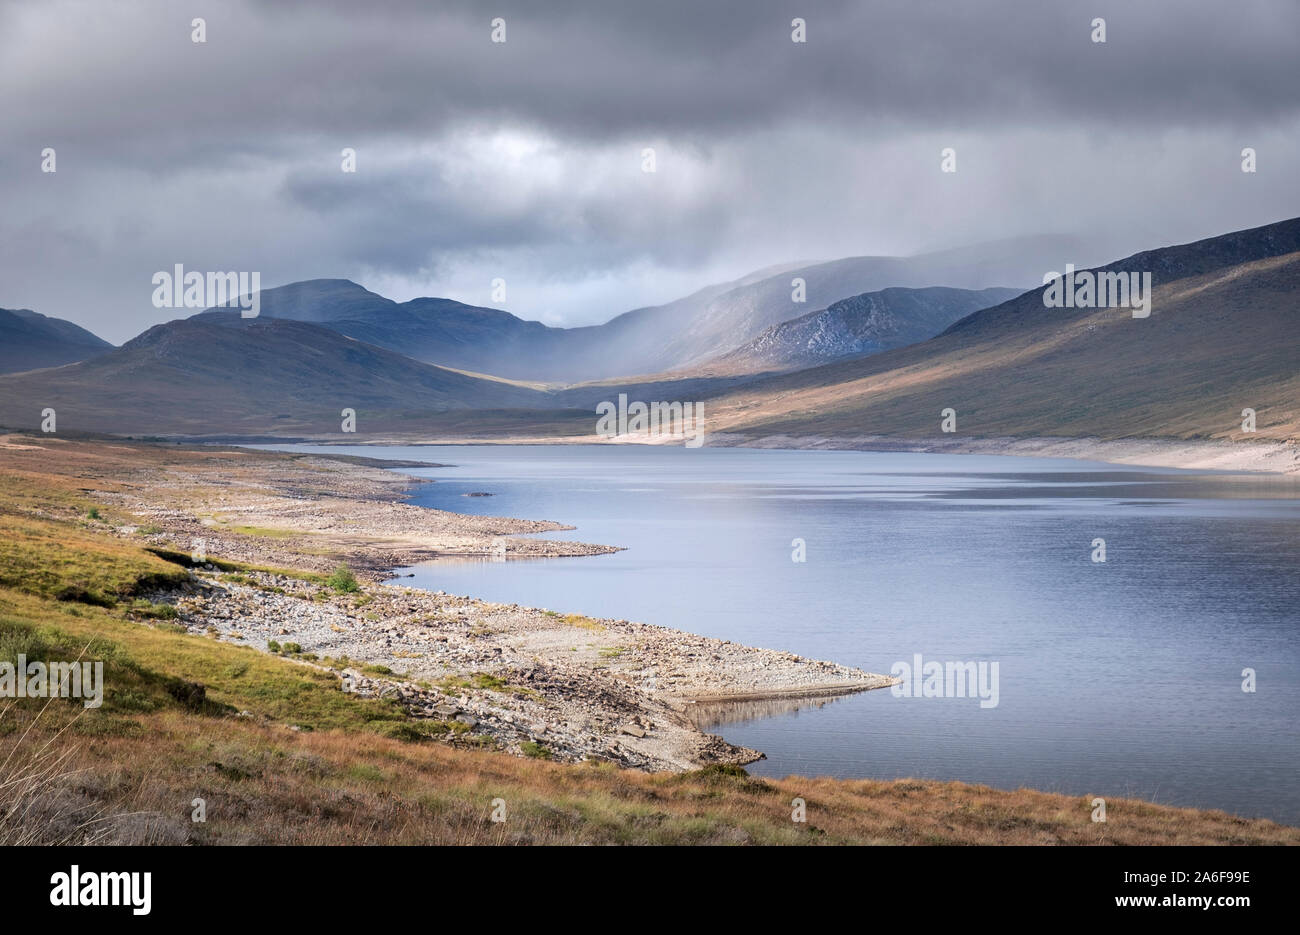 Paysage de montagne et lac - Loch Glascarnoch à Sutherland dans le nord-ouest des Highlands écossais Banque D'Images